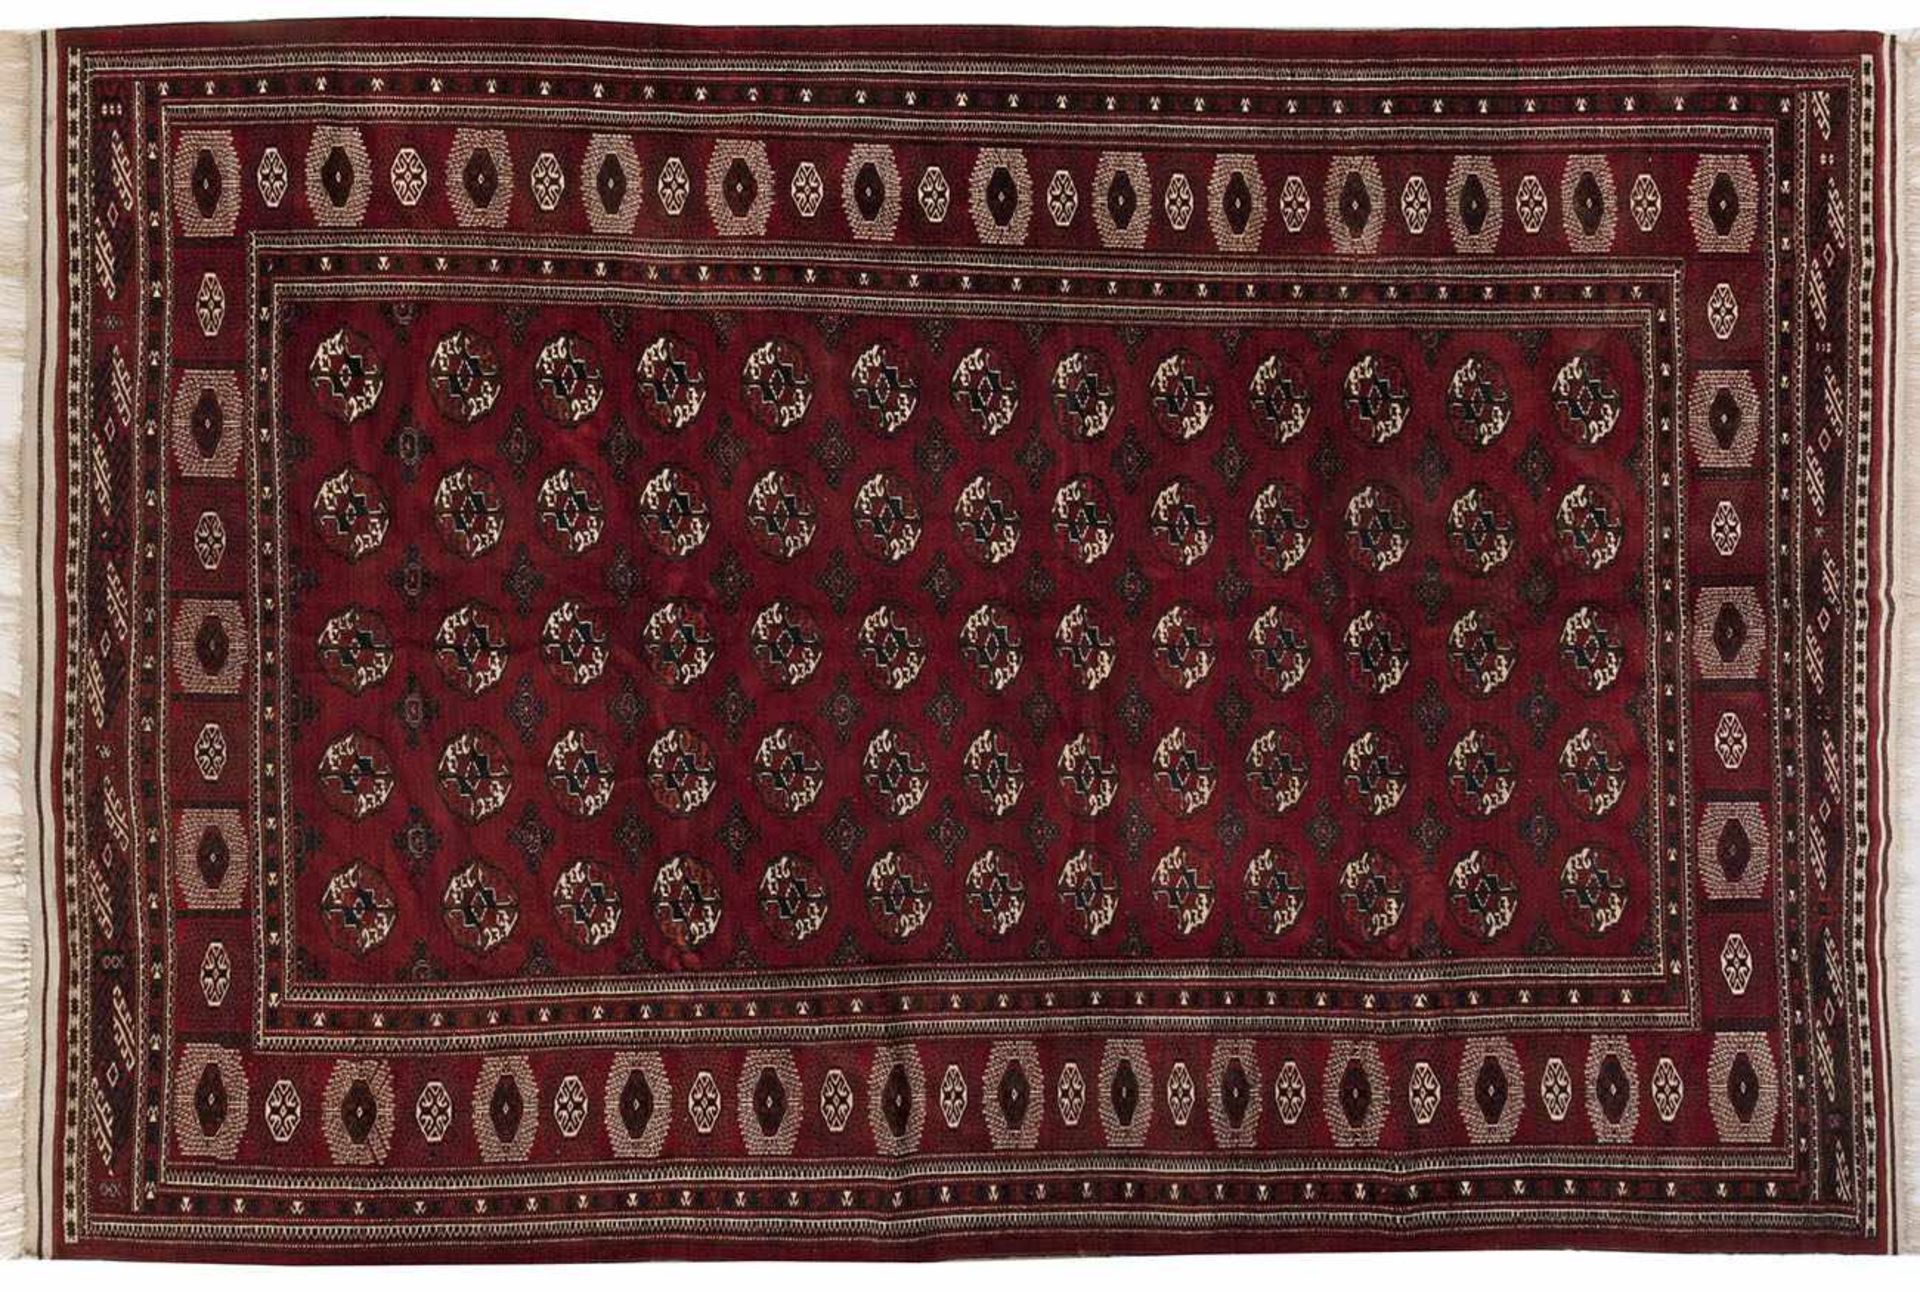 Großer alter Ersari-TeppichAfghanistan. Um 1930. Wolle auf Baumwolle. Im dunkelroten Innenfeld